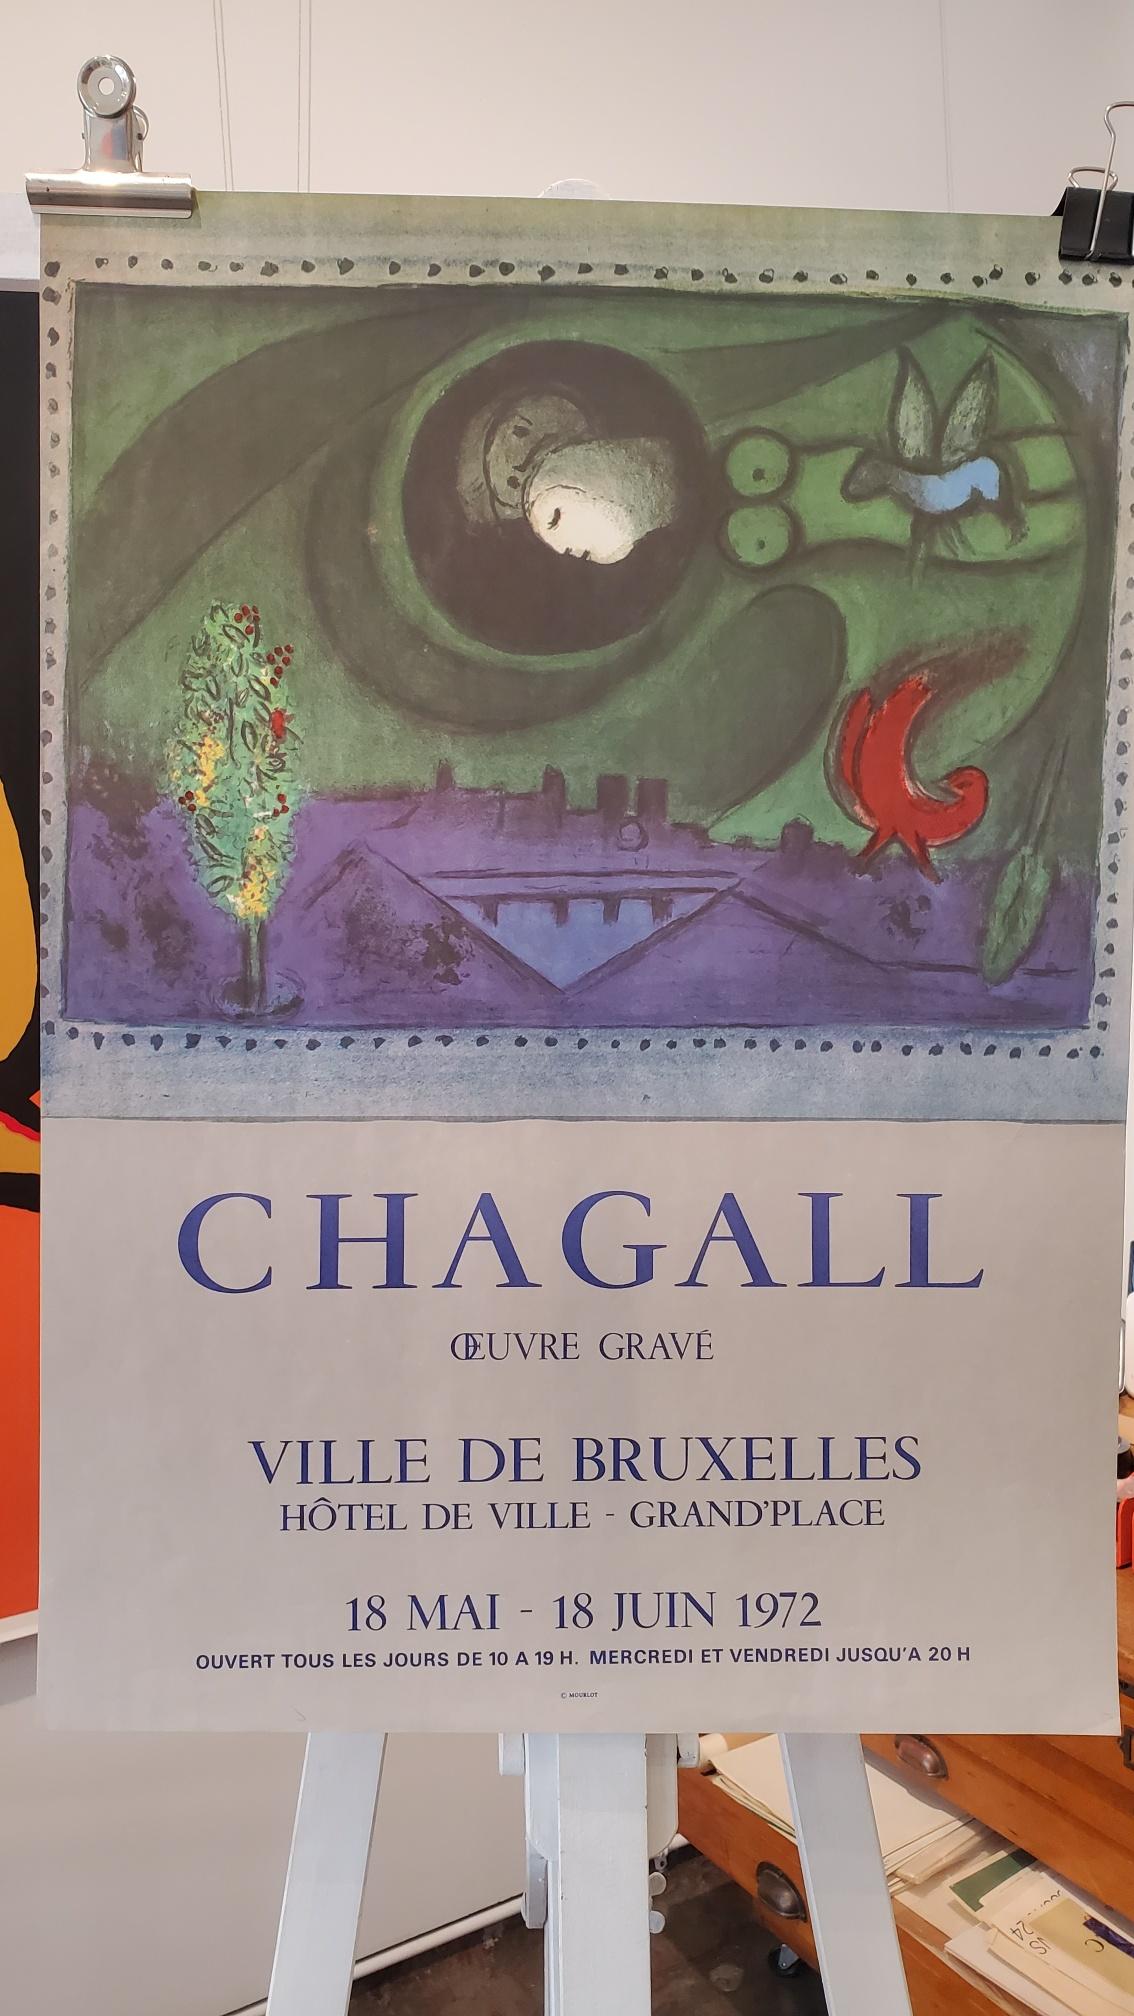 Dies ist ein schönes Ausstellungsplakat aus dem Jahr 1972, das Plakat ist in gutem Zustand und Farben und Zustand sind konsistent zu 

KÜNSTLER	
Chagall

FORMAT	
Ungefütterte Rückseite

JAHR	
1972

